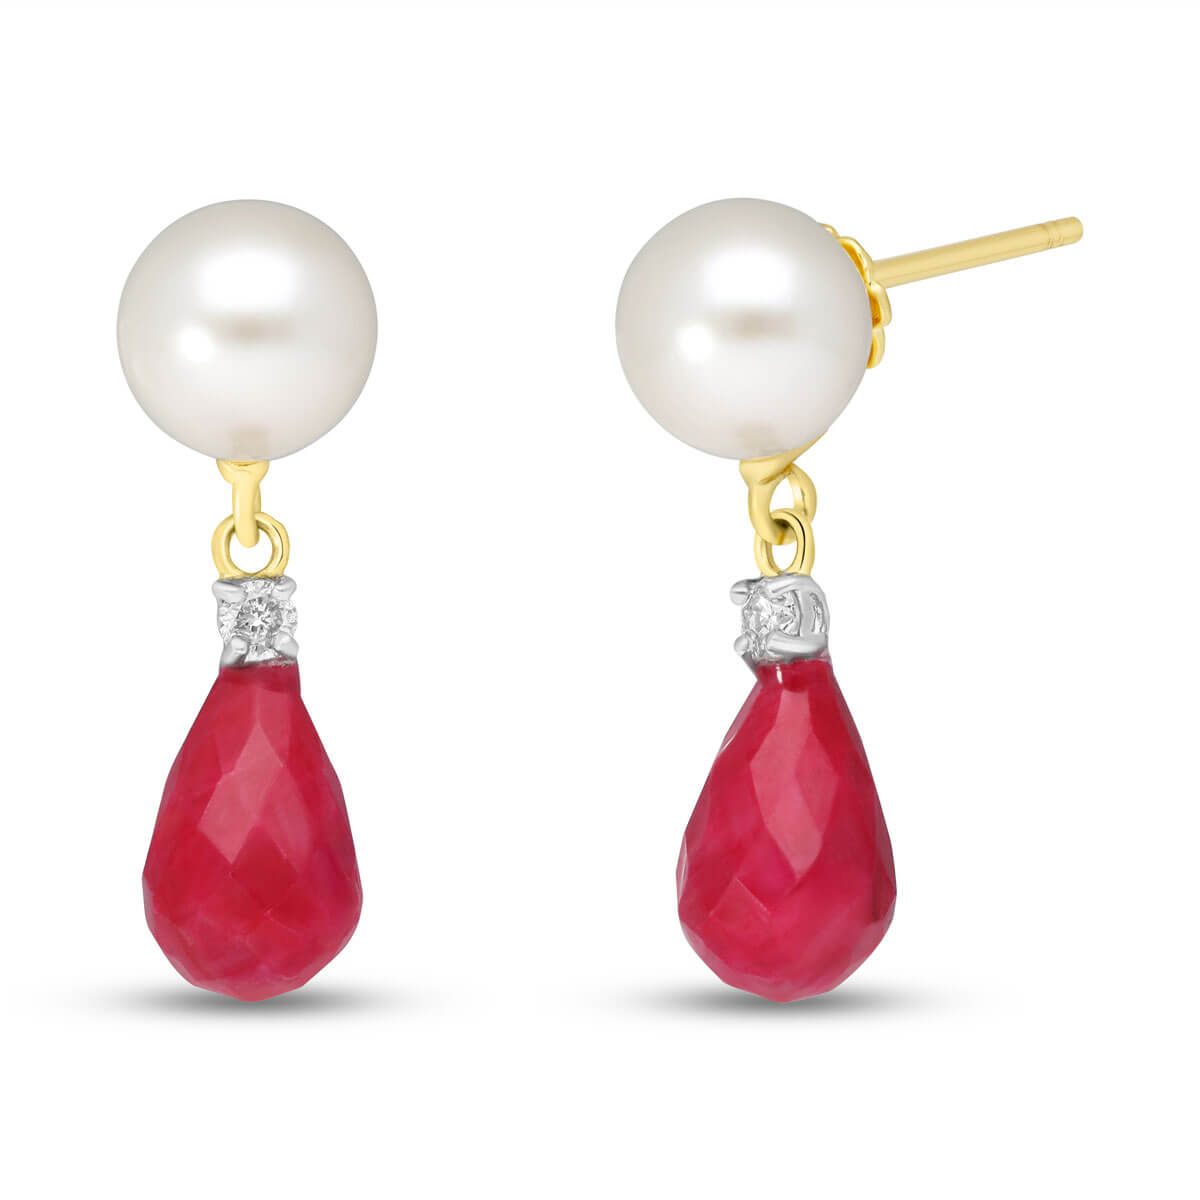 Ruby, Diamond & Pearl Drop Earrings in 9ct Gold